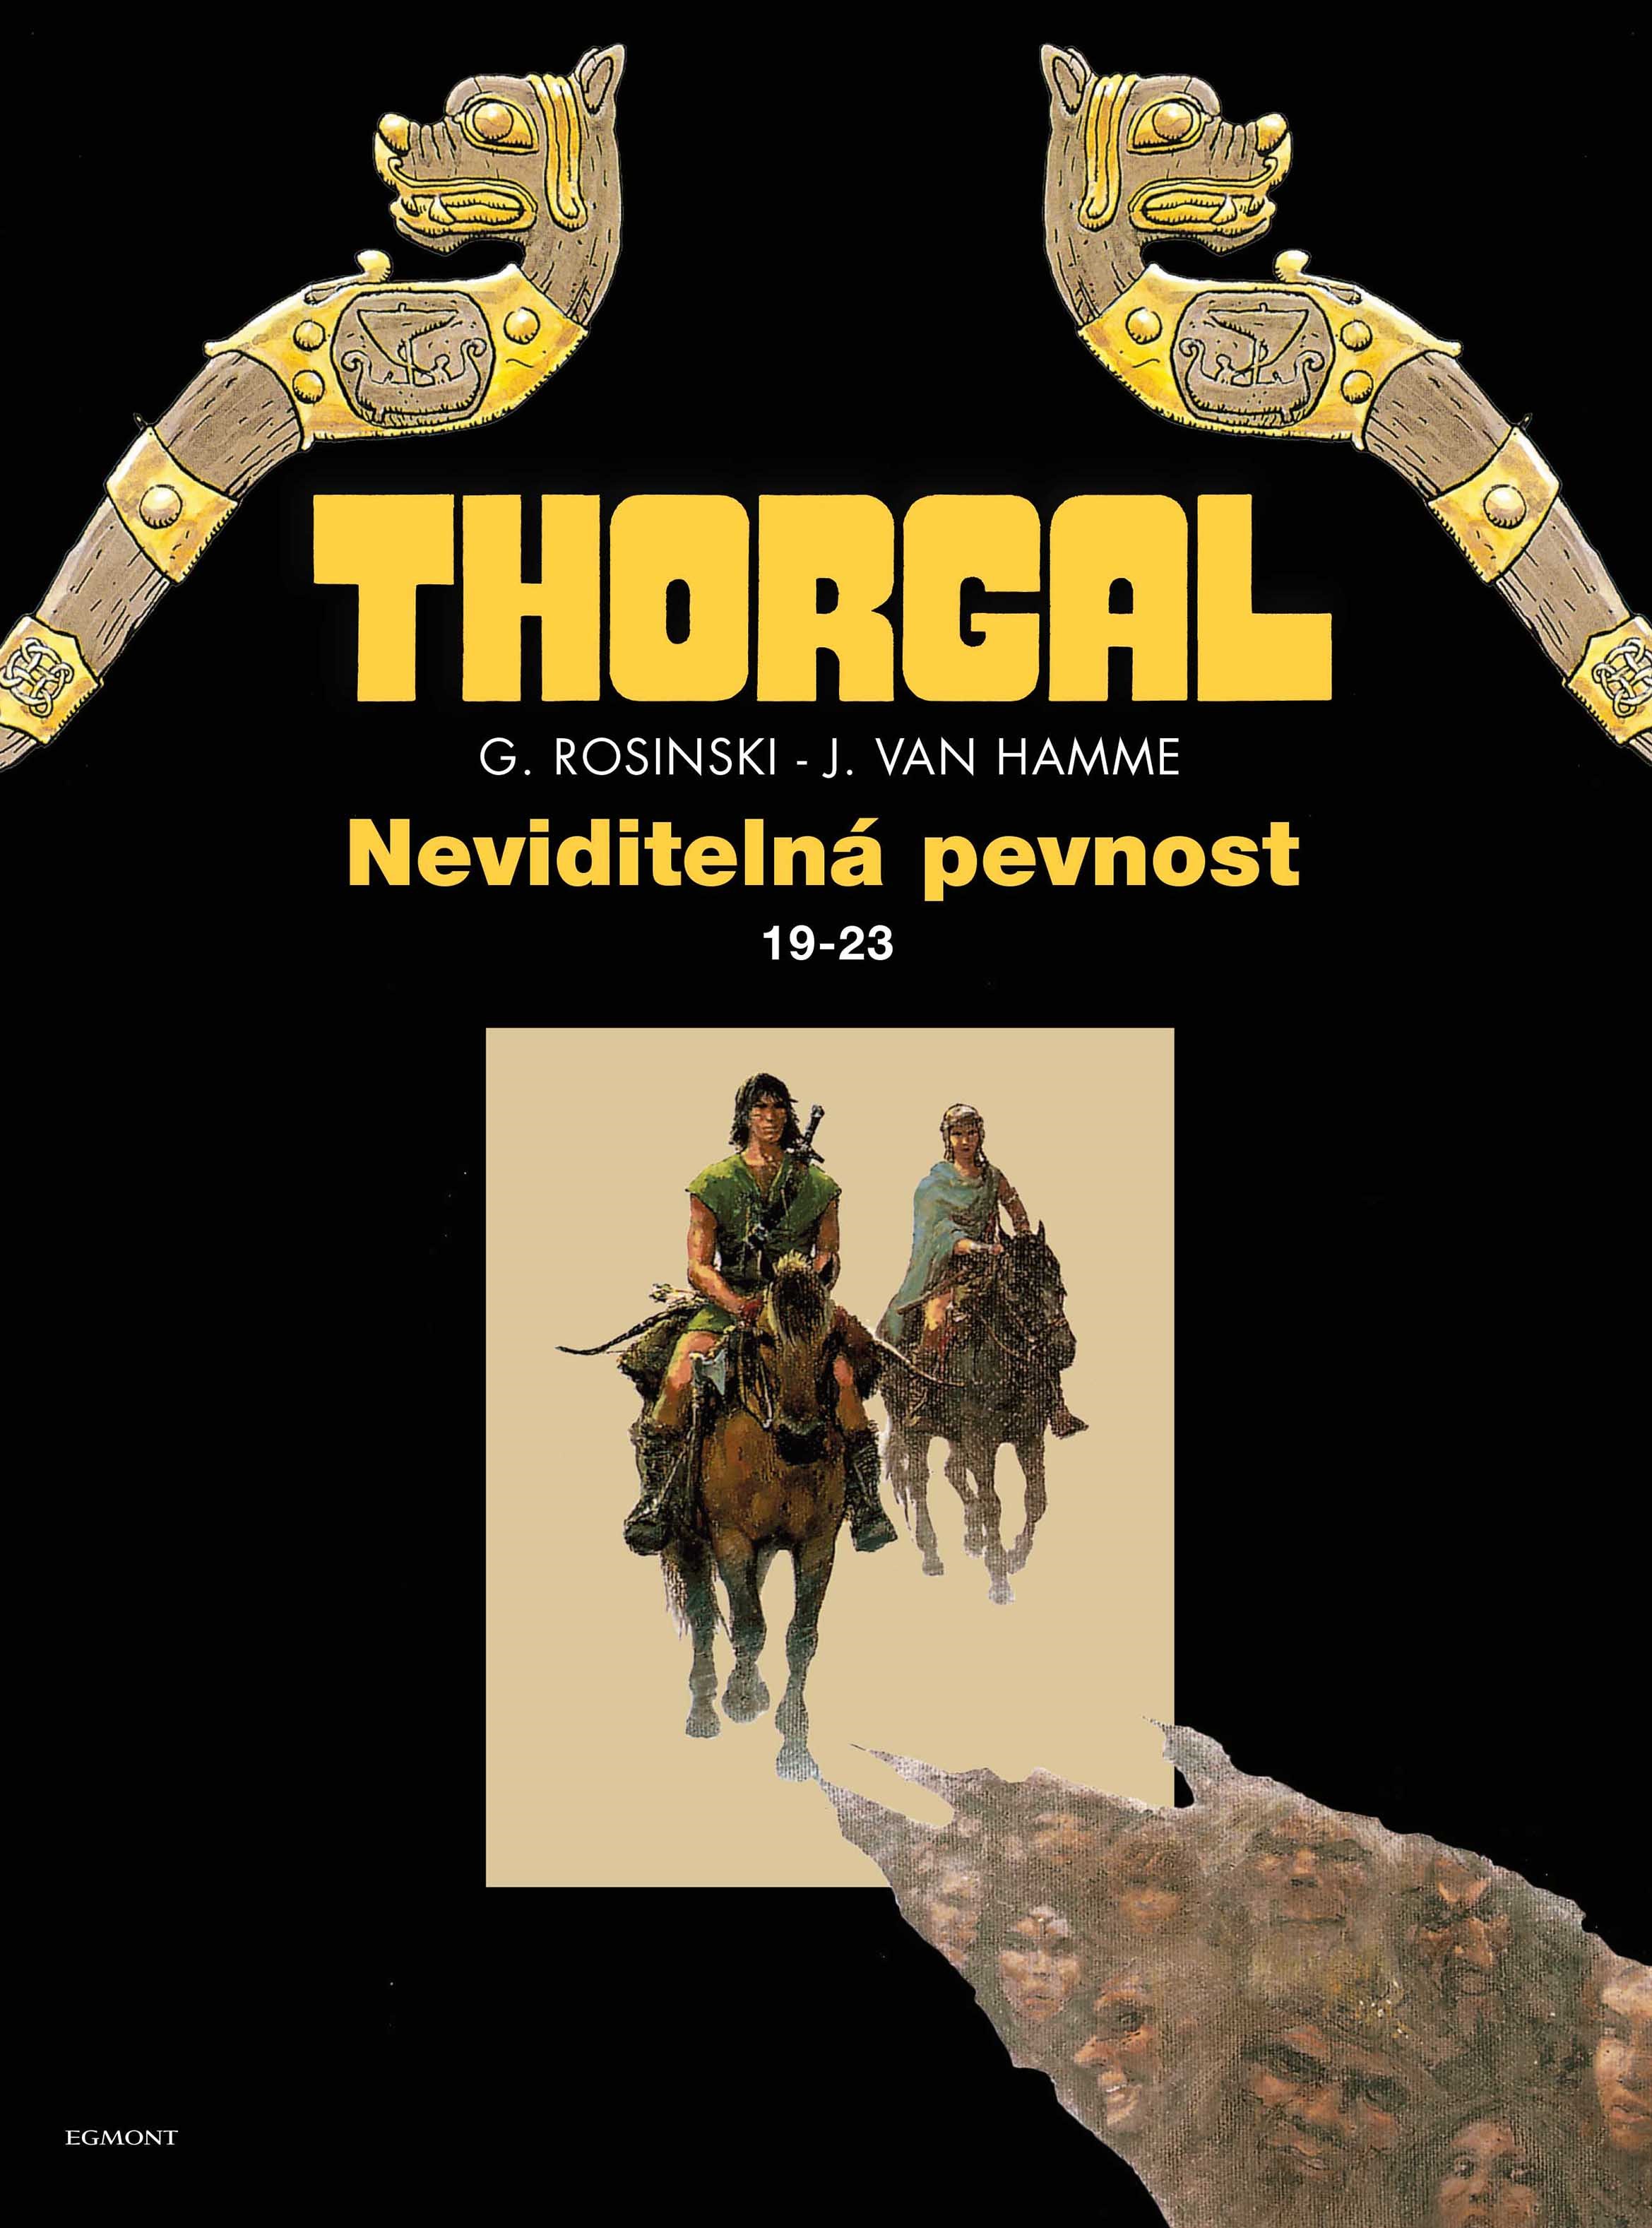 A - Thorgal: Neviditelná pevnost omnibus (19-23)